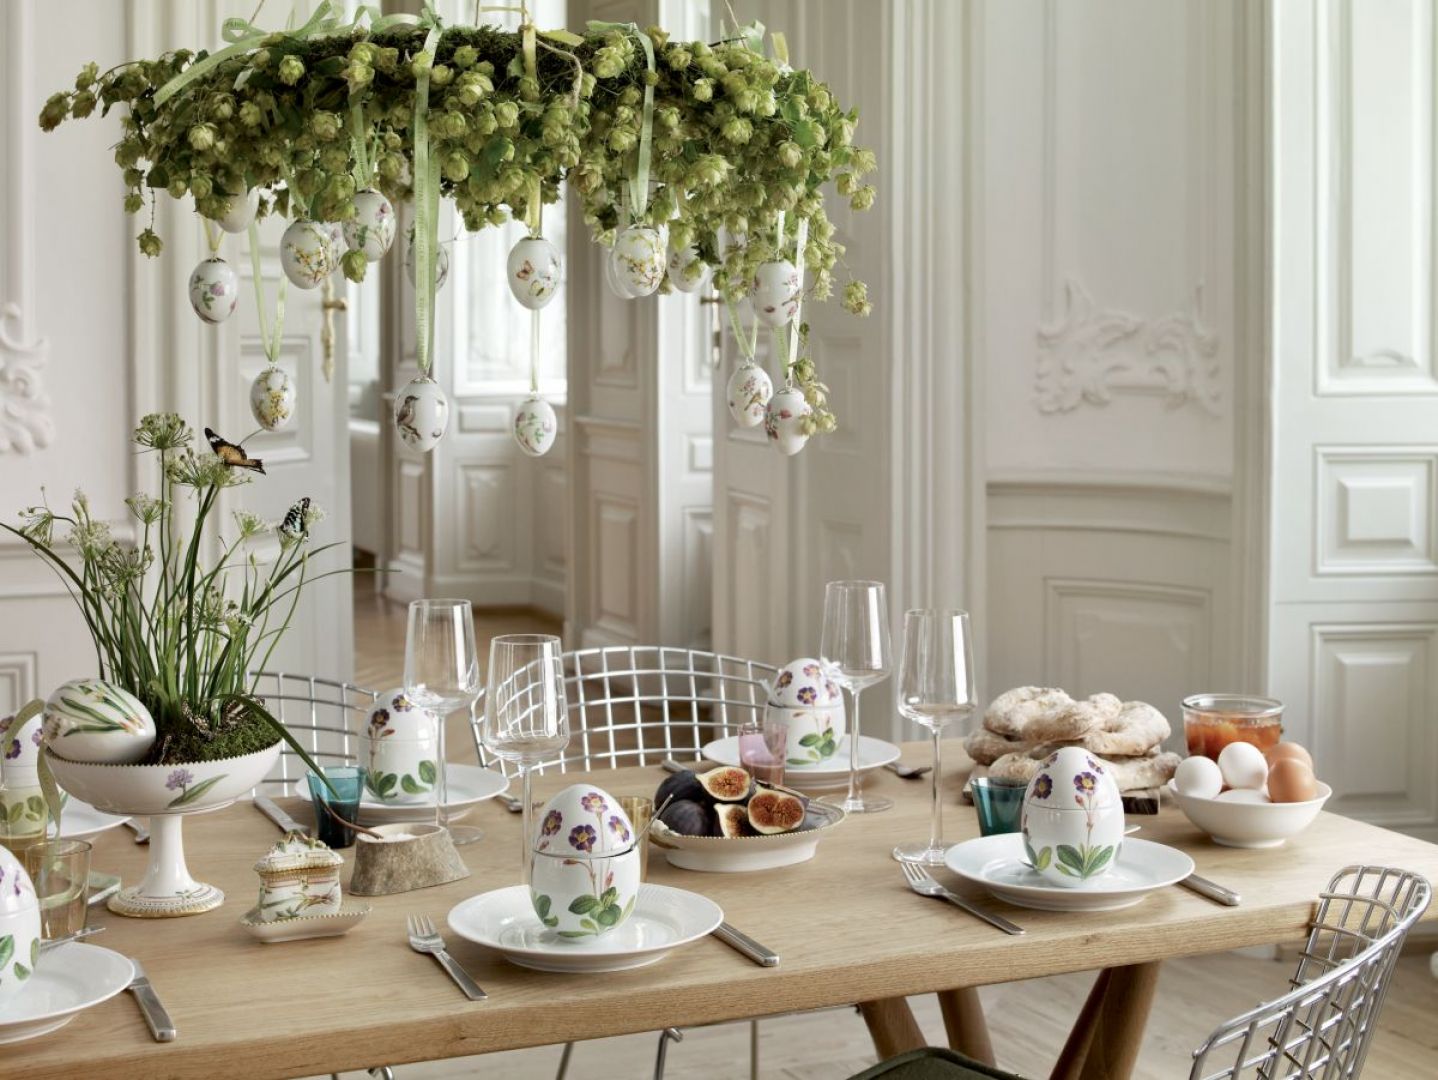 Piękne porcelanowe jaja oraz zawieszki w kształcie jaj stanowią główną dekorację tego wielkanocnego stołu. Fot. Royal Copenhagen.